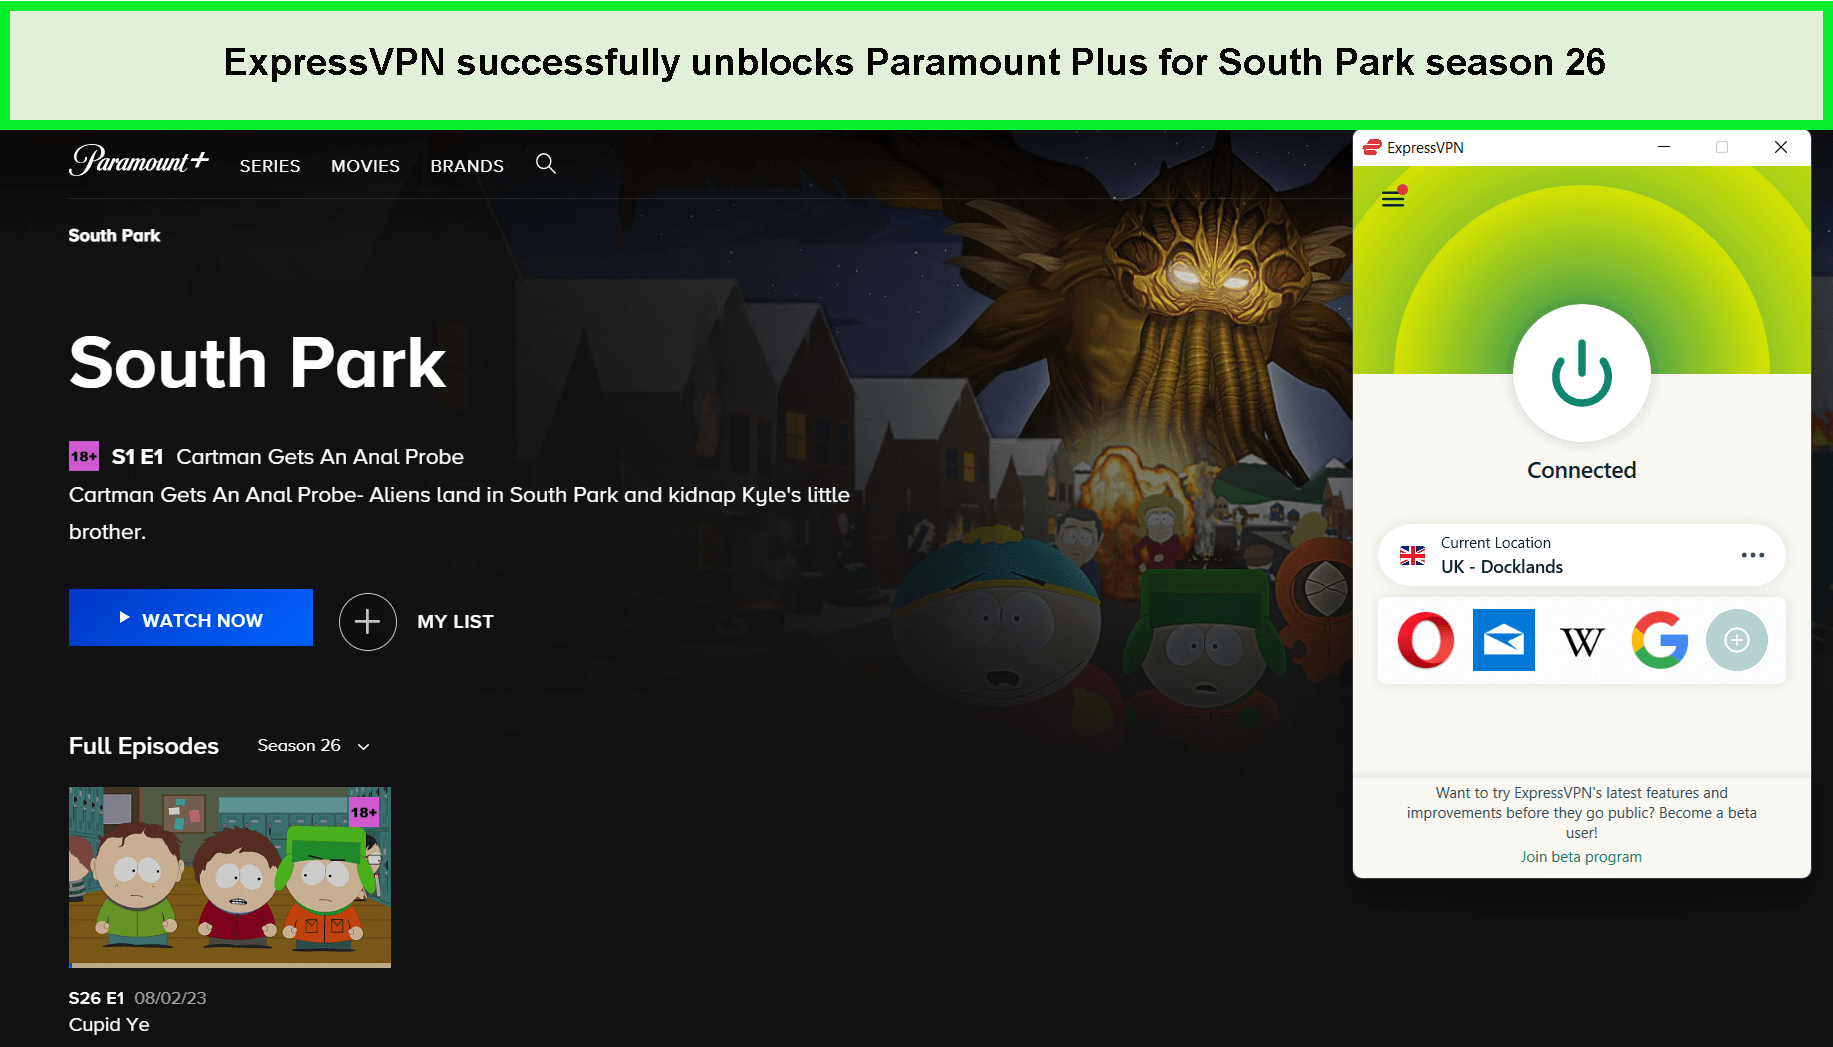 expressvpn-unblock-paramount-plus-for-south-park-season-26